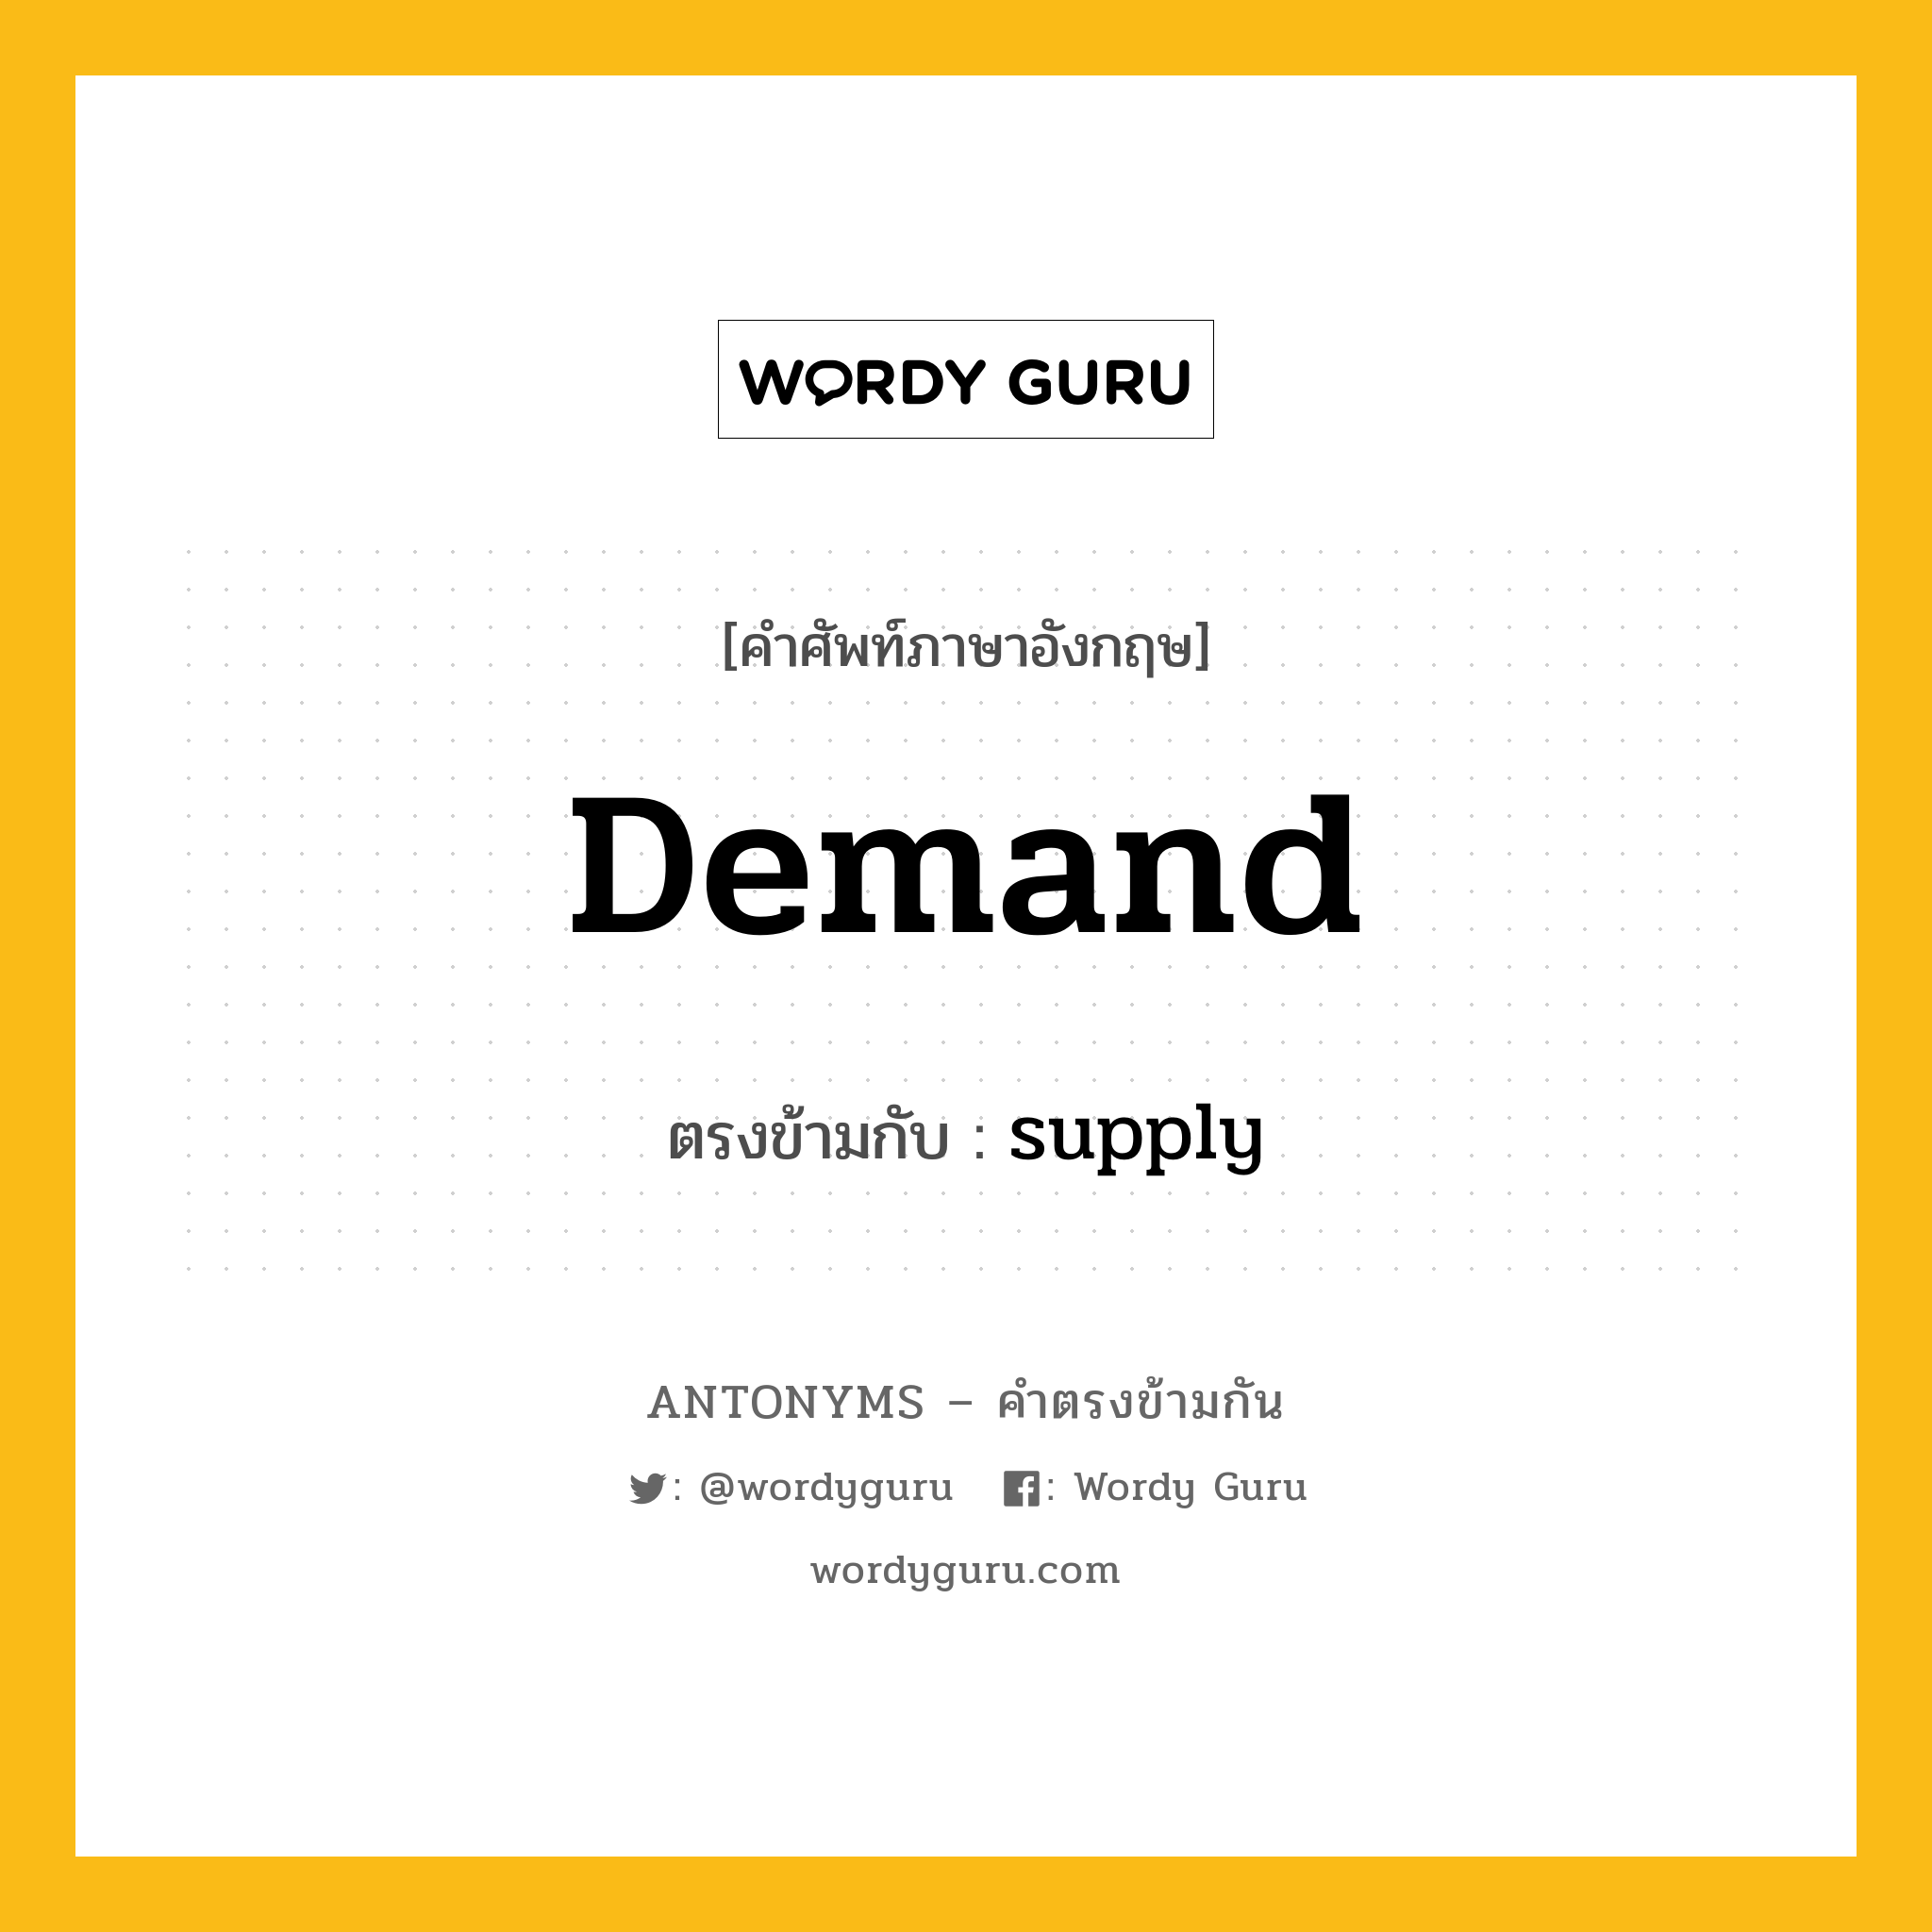 demand เป็นคำตรงข้ามกับคำไหนบ้าง?, คำศัพท์ภาษาอังกฤษ demand ตรงข้ามกับ supply หมวด supply